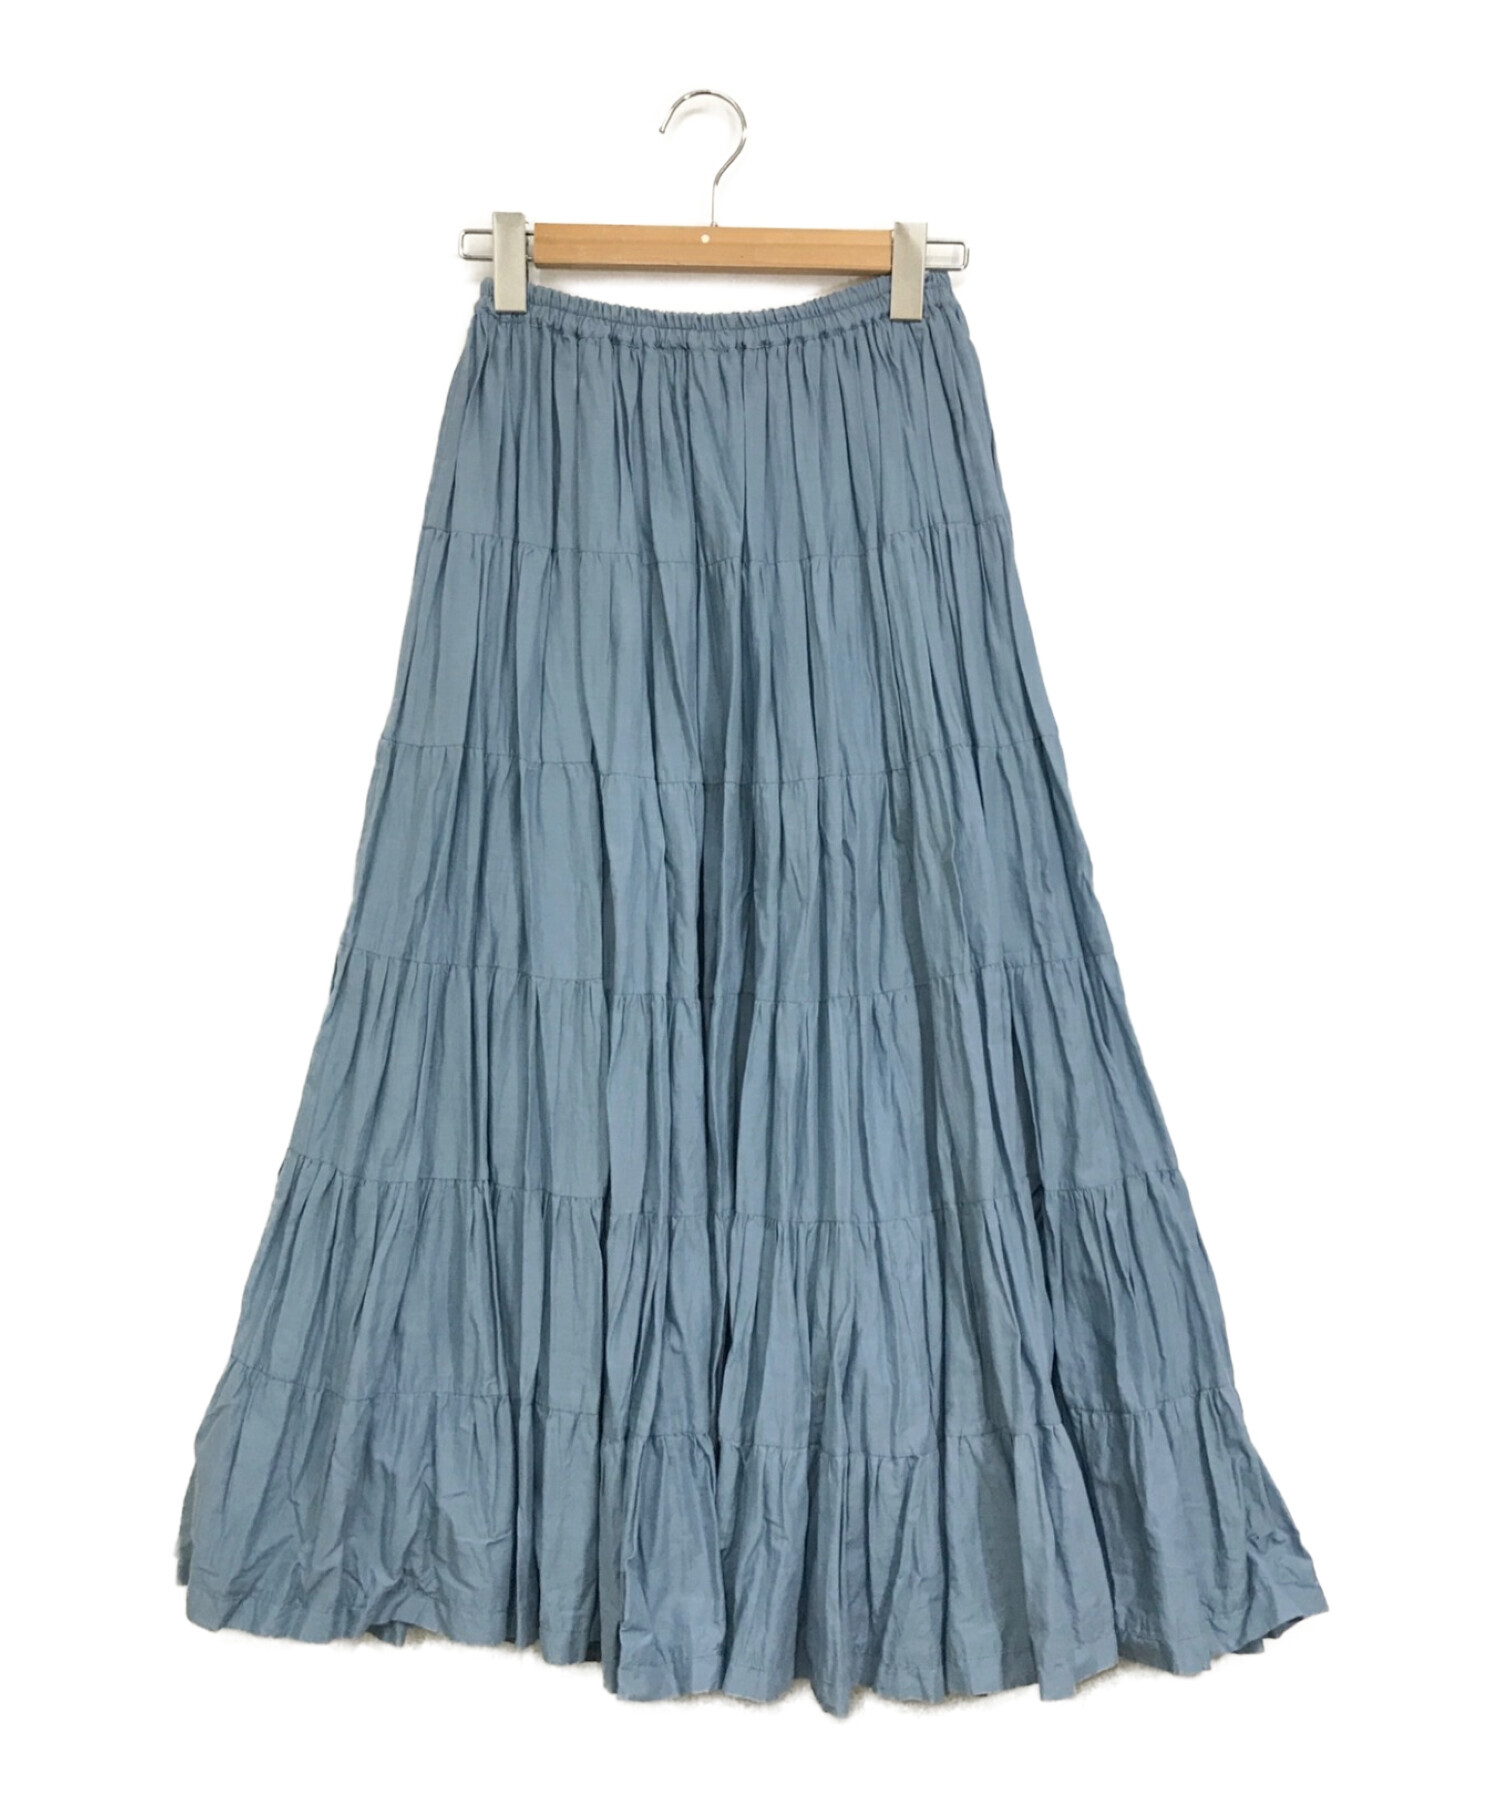 MARIHA (マリハ) Demi-Luxe Beams (デミルクス ビームス) 草原の虹スカート ブルー サイズ:下記参照